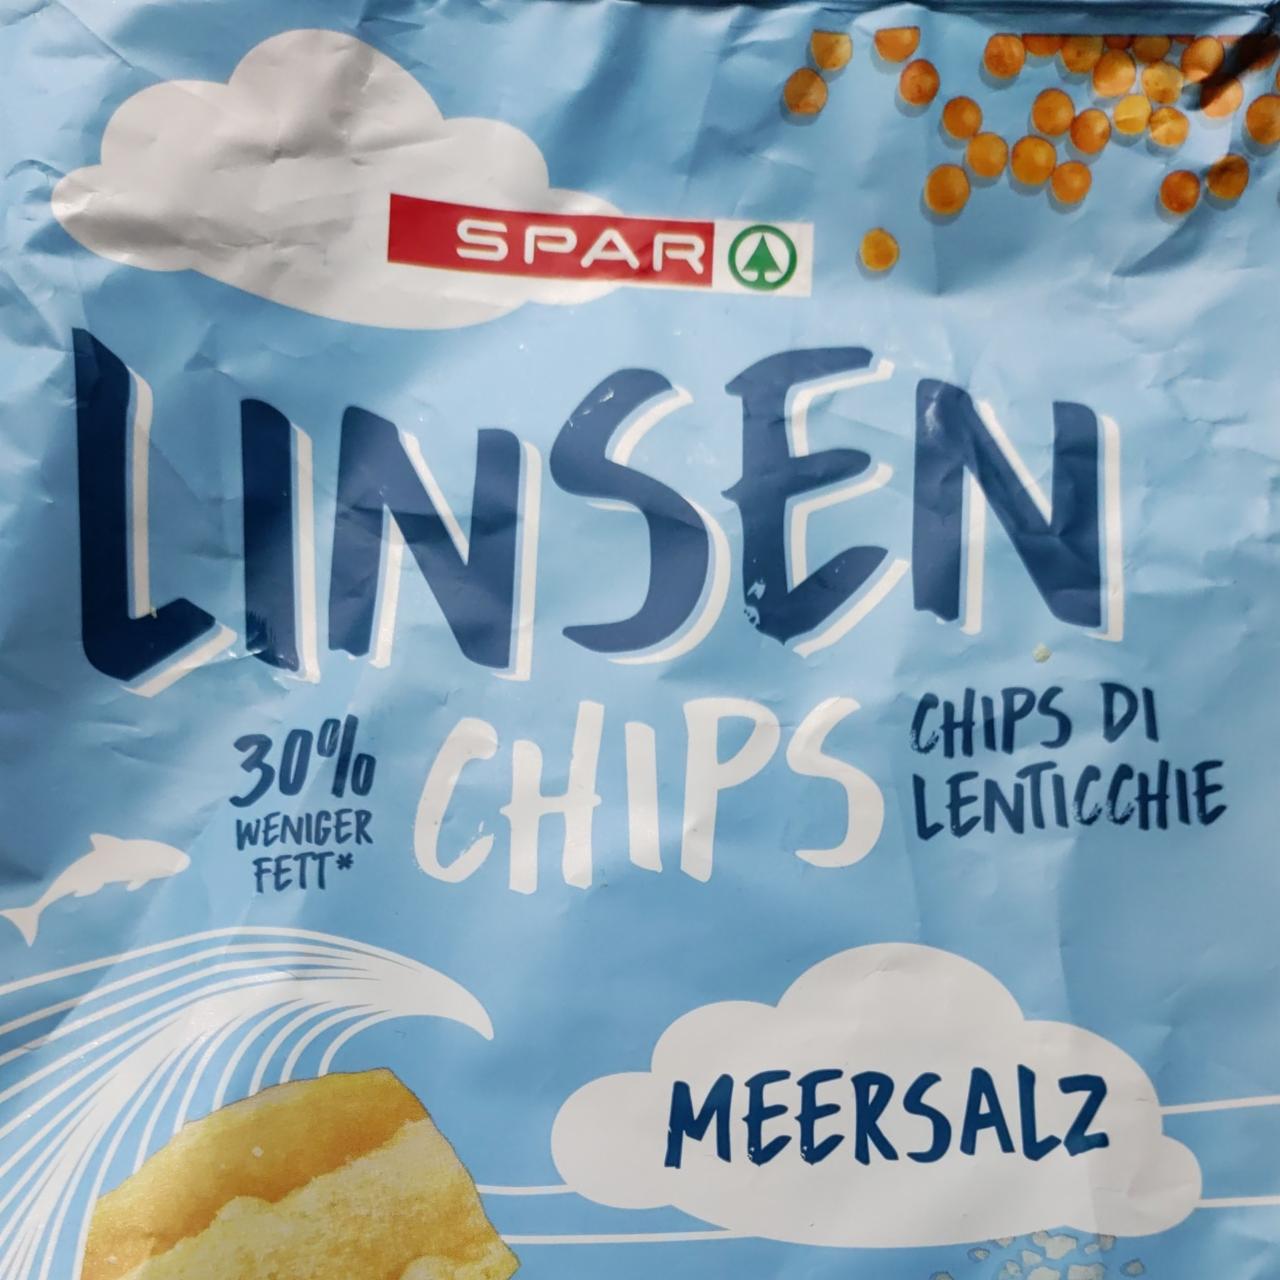 Linsen Chips meersalz Spar - kalorie, kJ a nutriční hodnoty